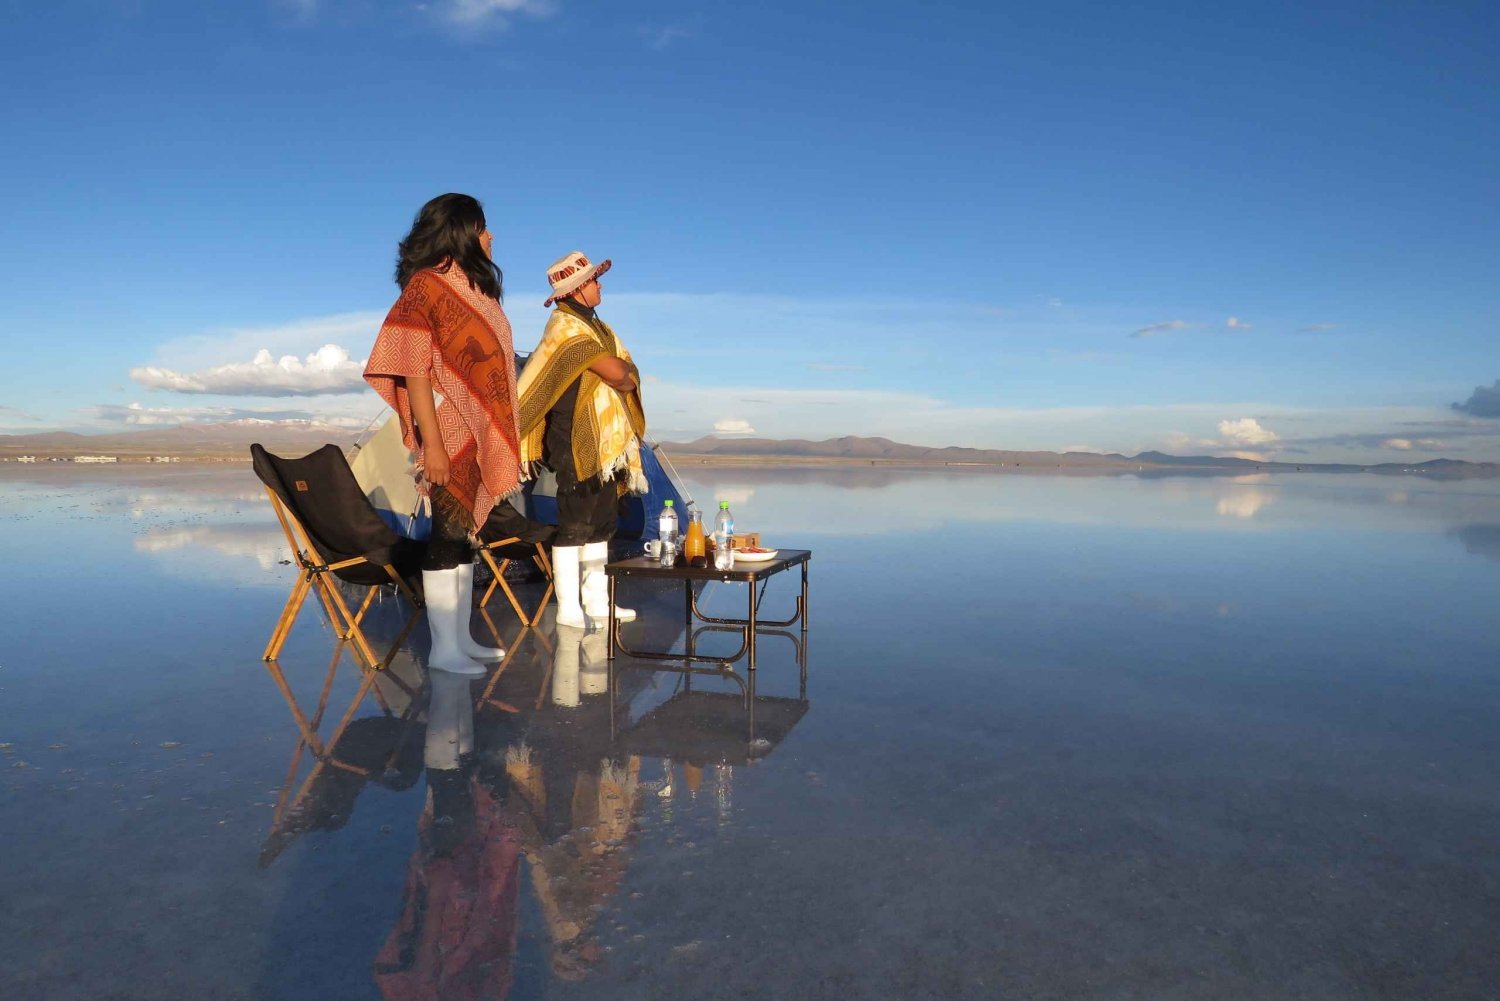 La Paz: Uyuni Salt Flats Tour by Bus